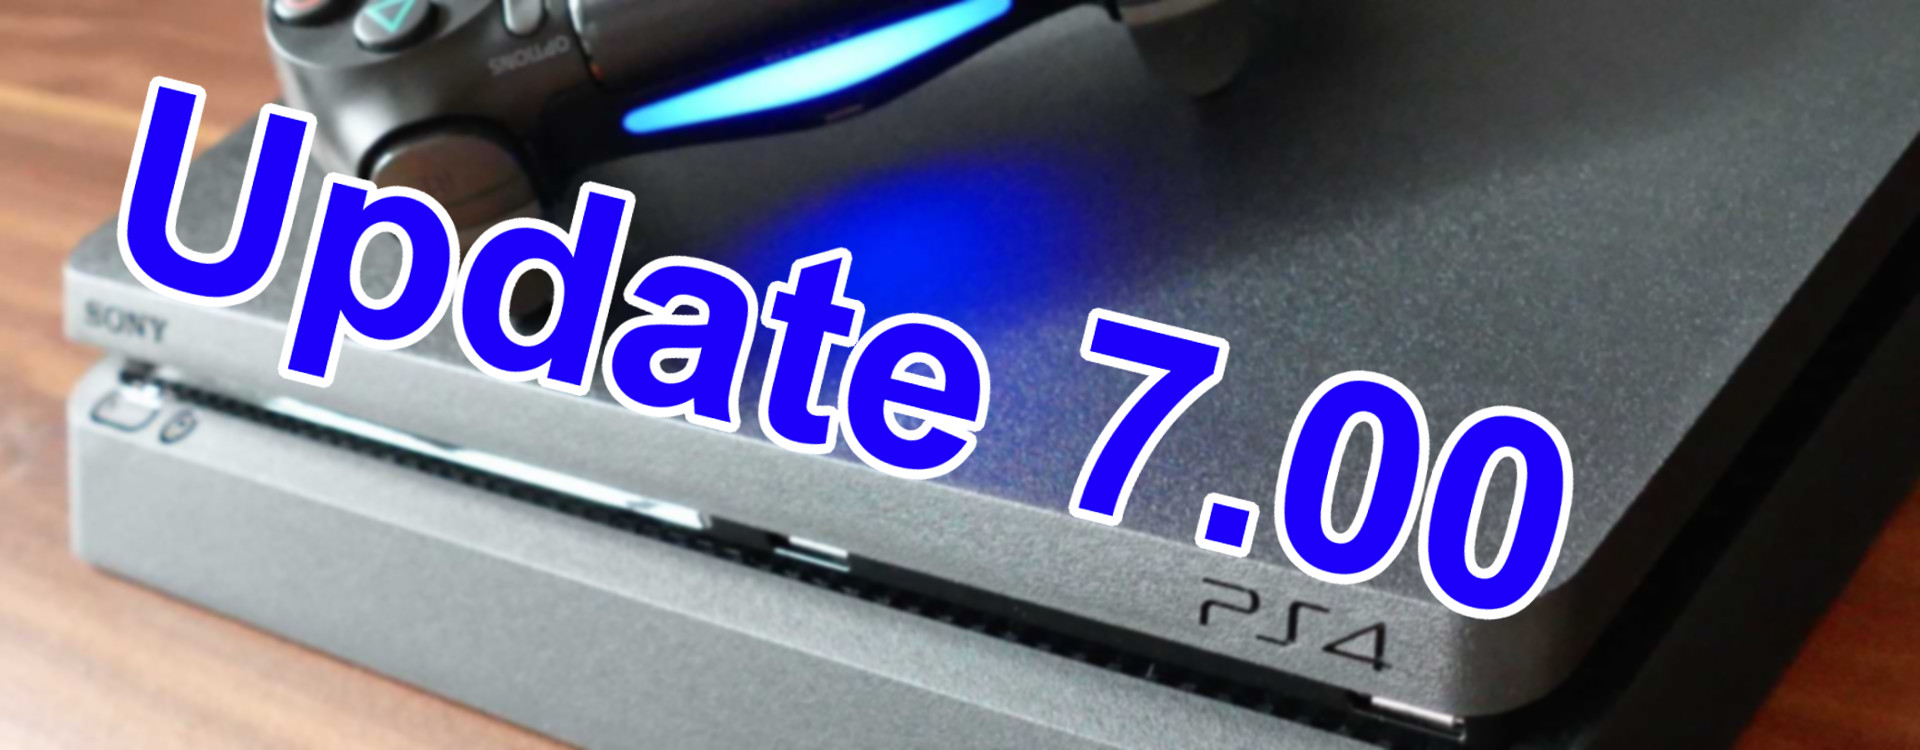 PlayStation 4: Update 7.00 bringt neue Features und eines, das kaum wer braucht